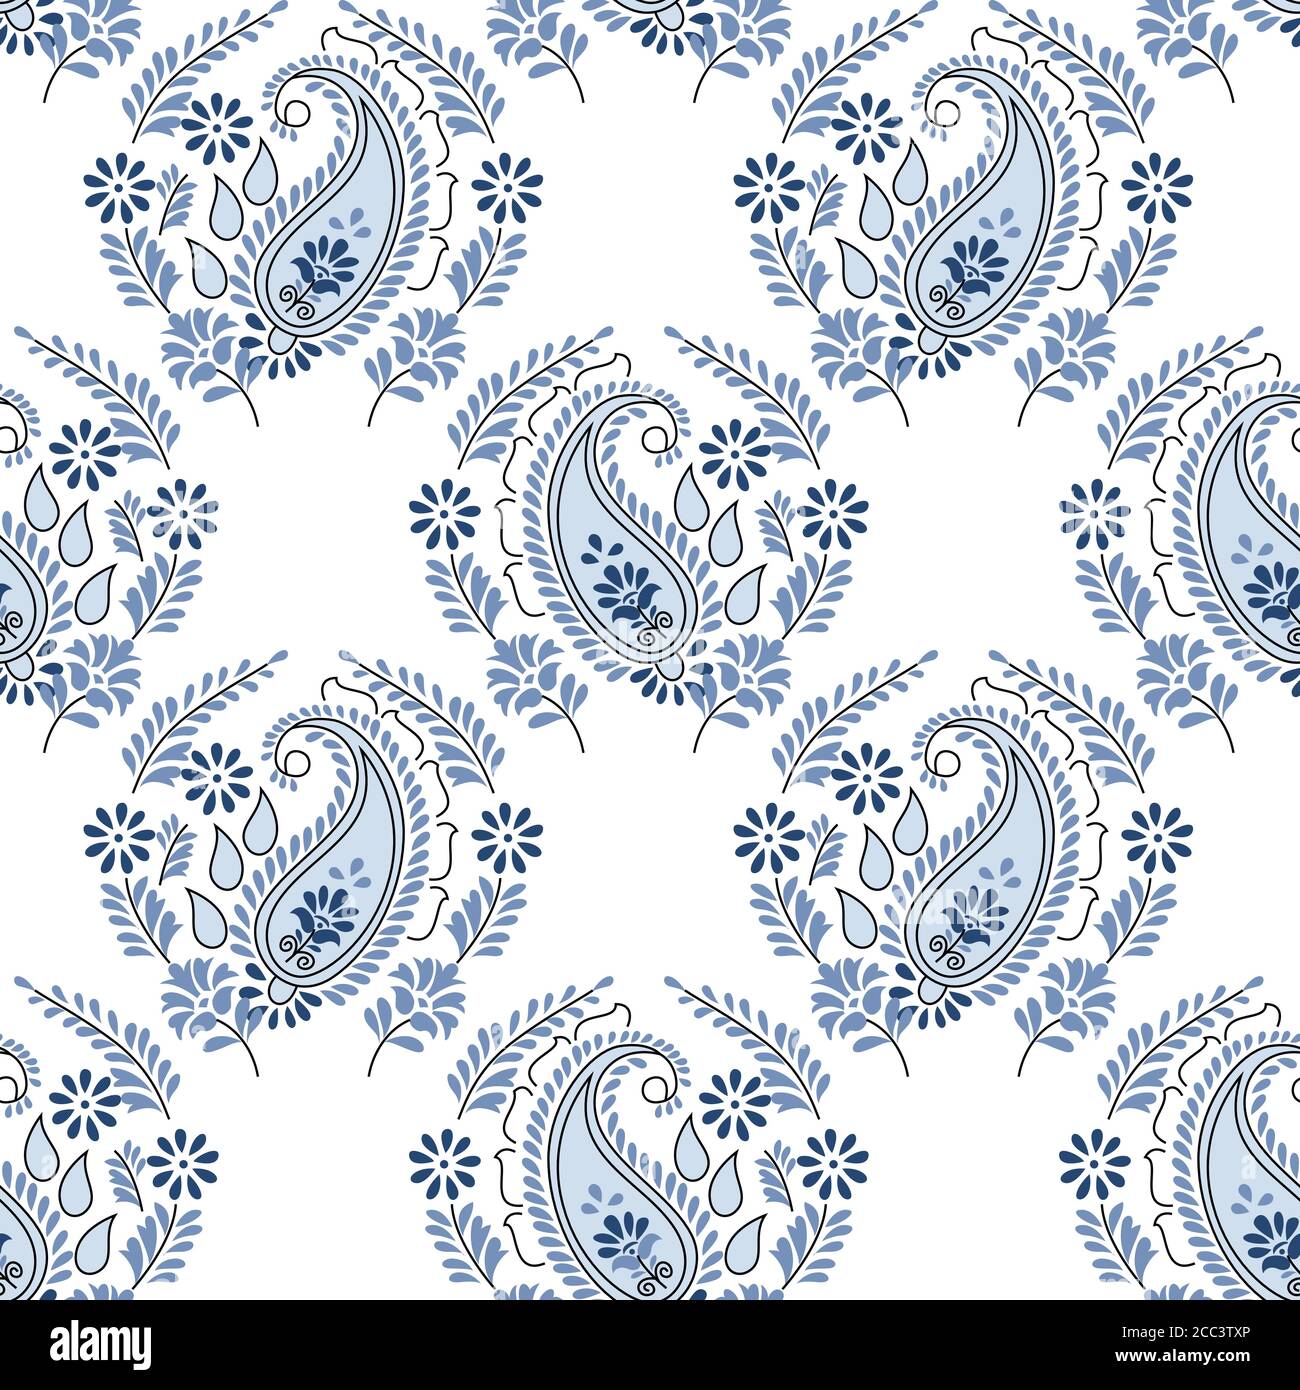 Nahtlose Paisley Blume Design Muster nicht weißen Hintergrund Stock Vektor